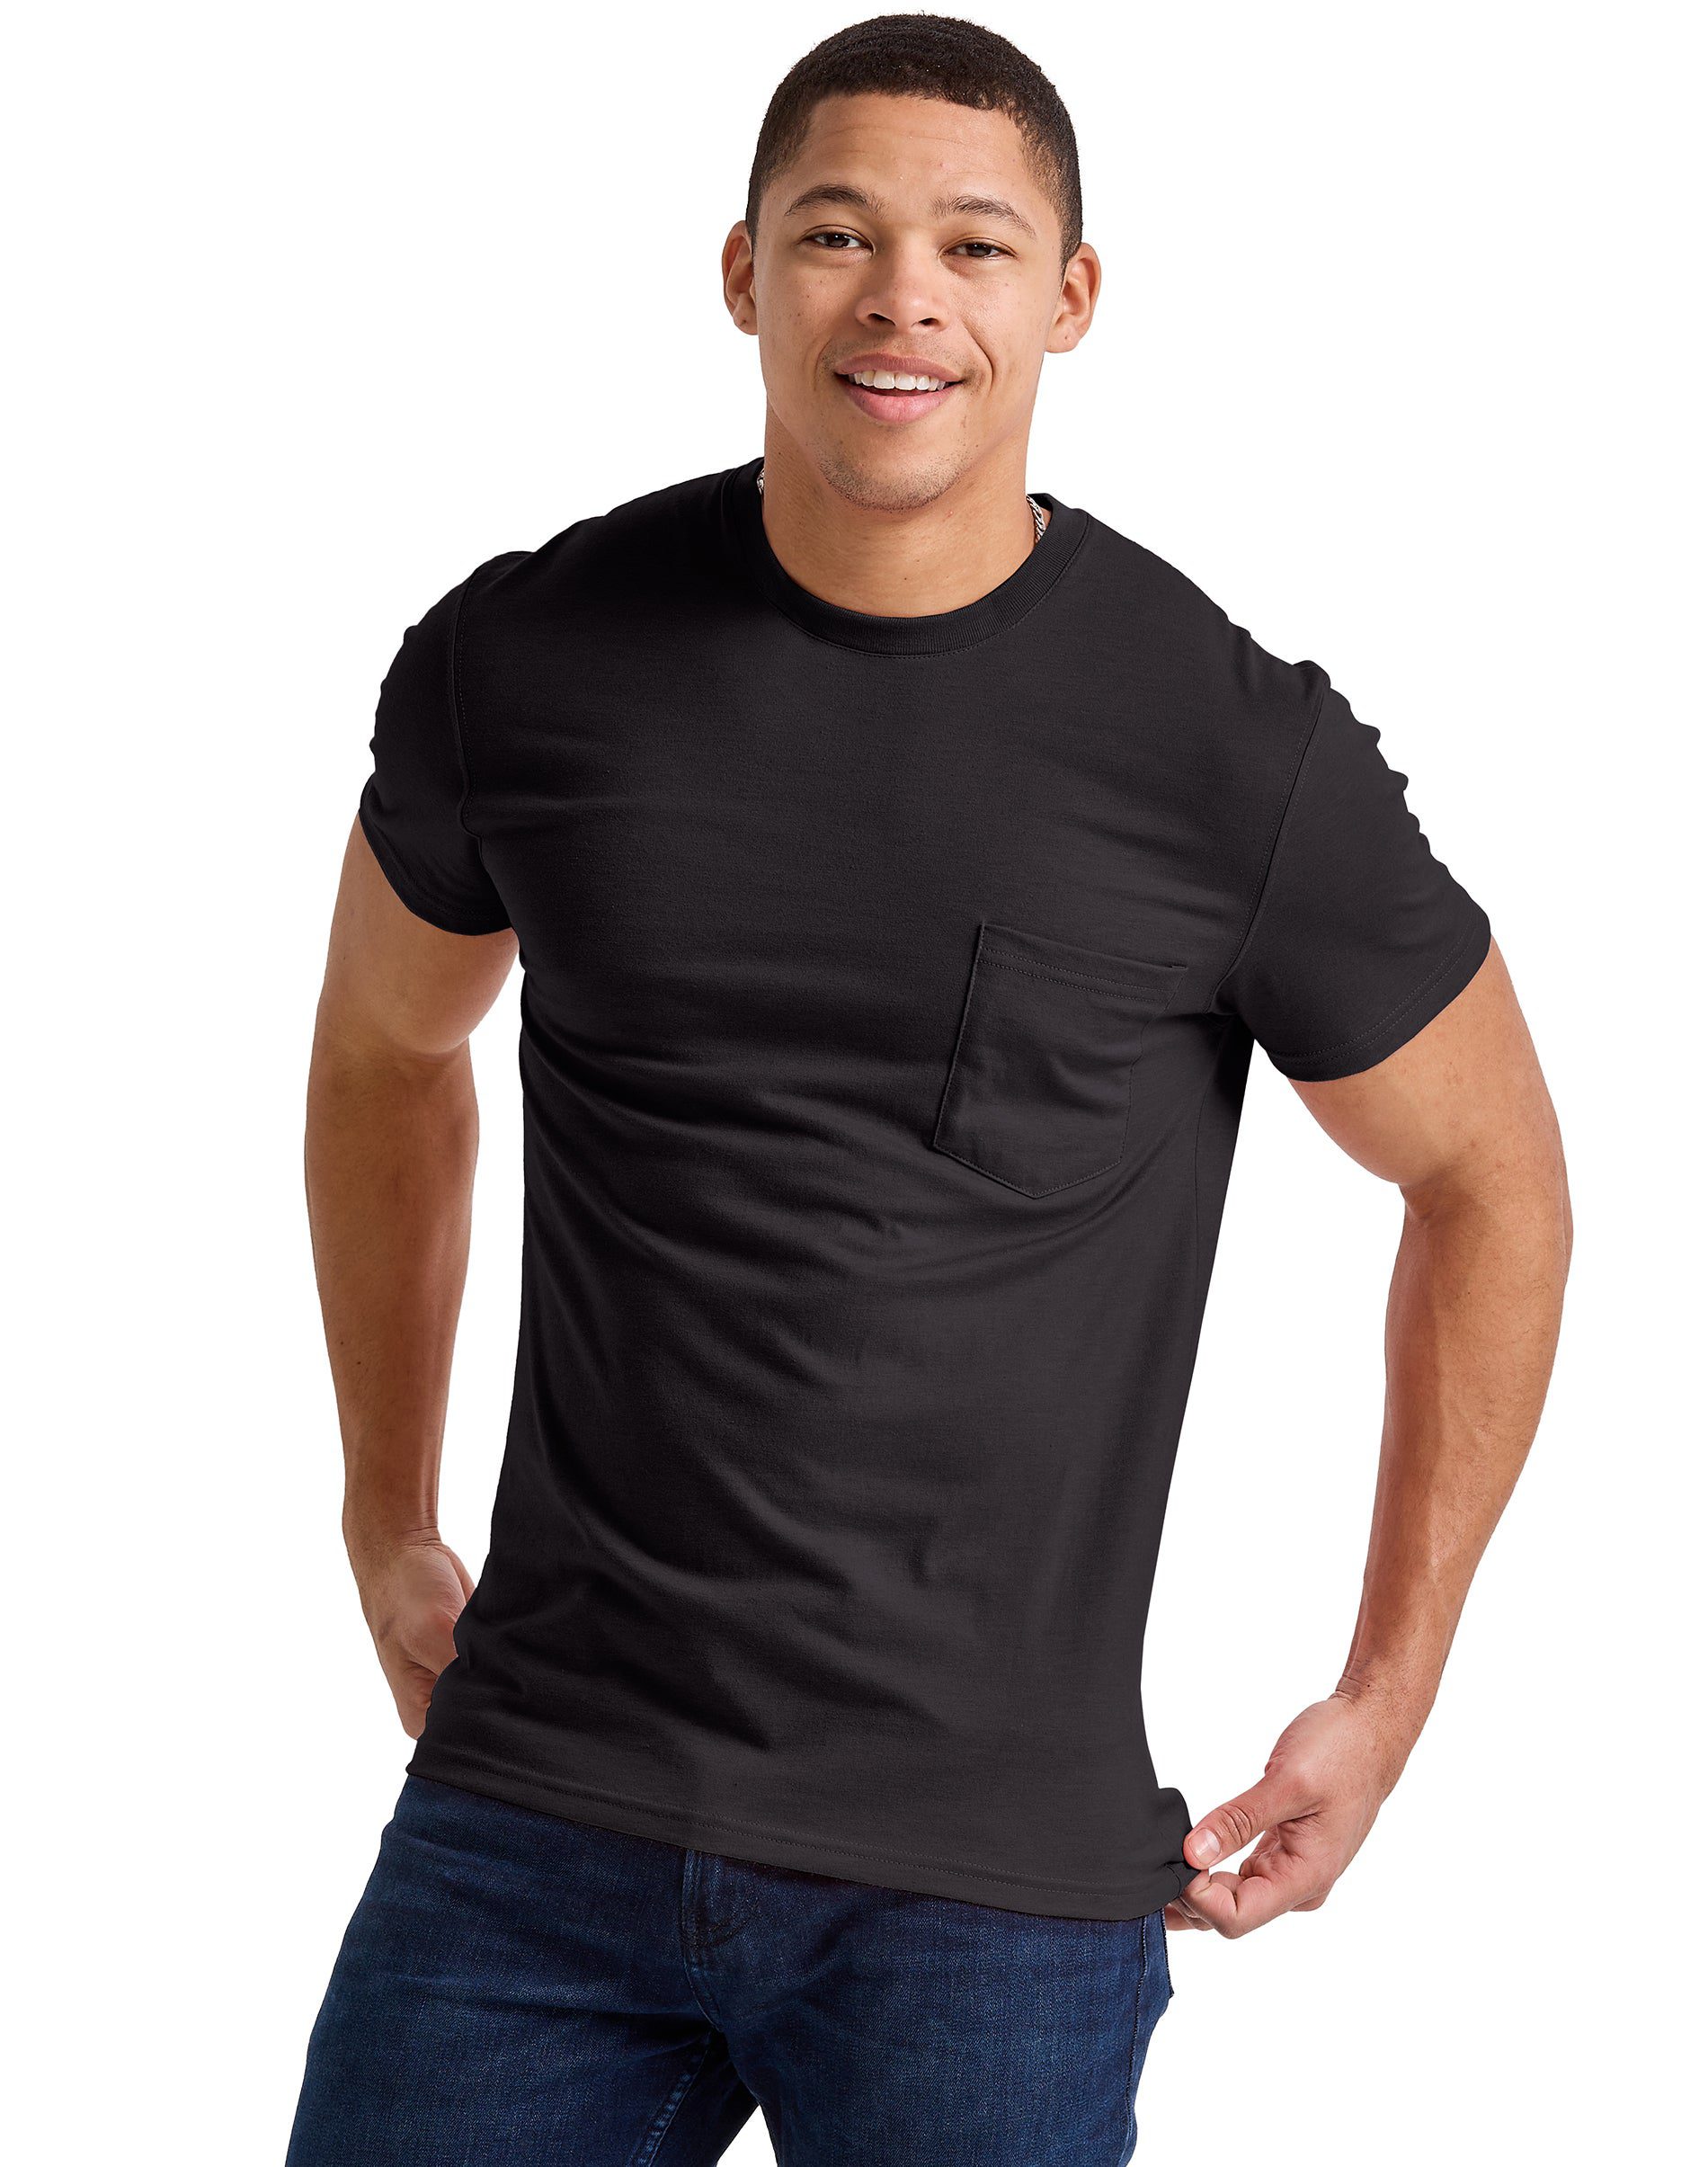 Hanes Originals Mens Tri-Blend Pocket T-Shirt